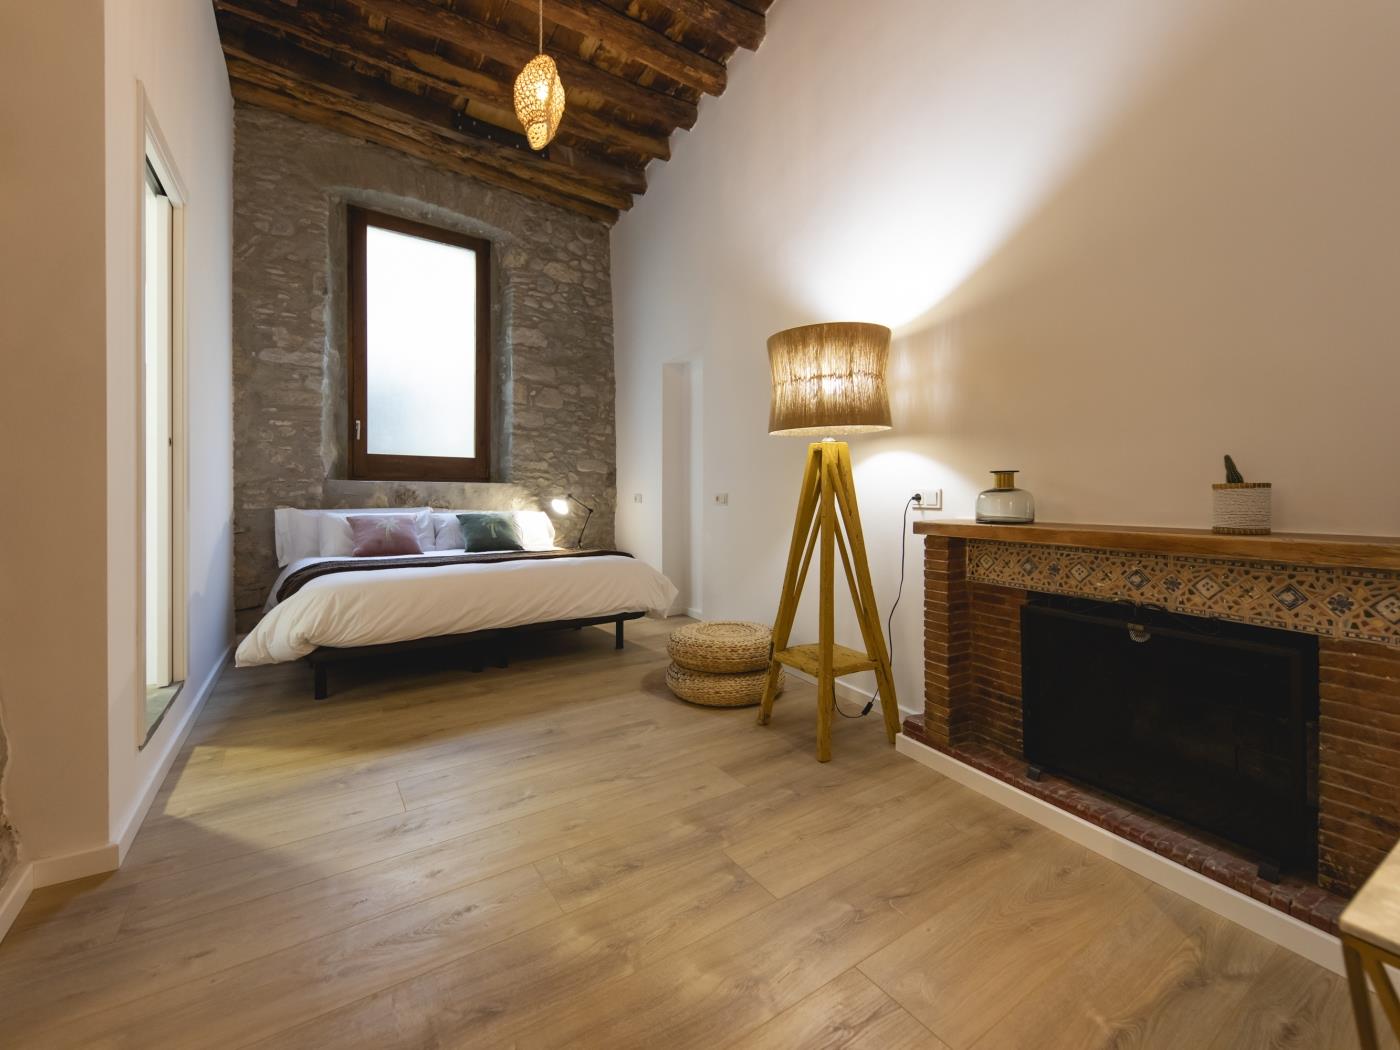 Bravissimo Bali, hermoso piso de 2 dormitorios en Girona